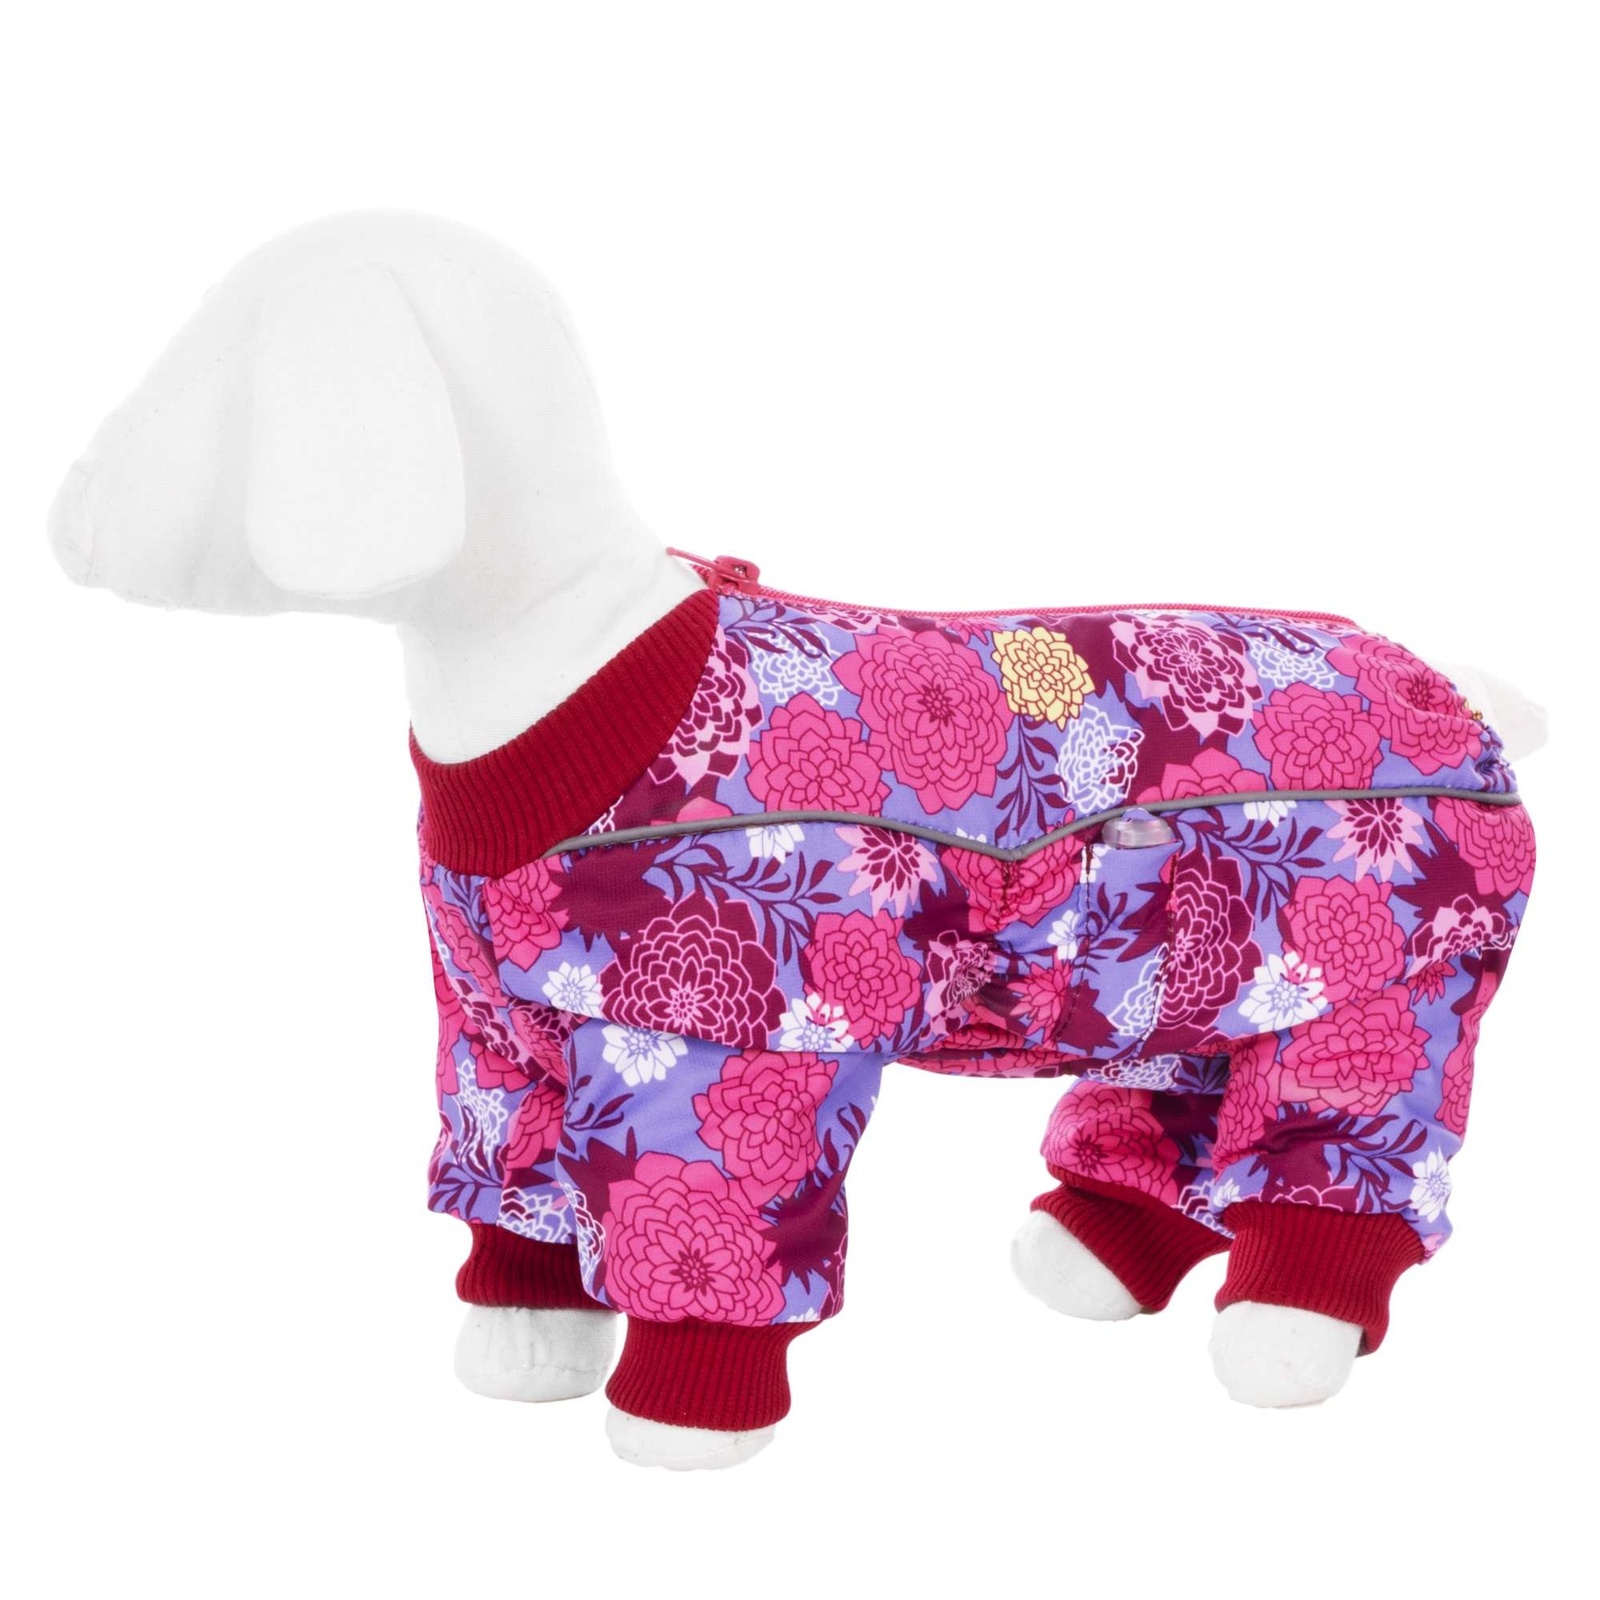 Yami-Yami одежда Yami-Yami одежда комбинезон для собак малых пород, на флисе с рисунком цветы (100 г) yami yami одежда yami yami одежда комбинезон для собак малых пород на меху с рисунком снежинки m